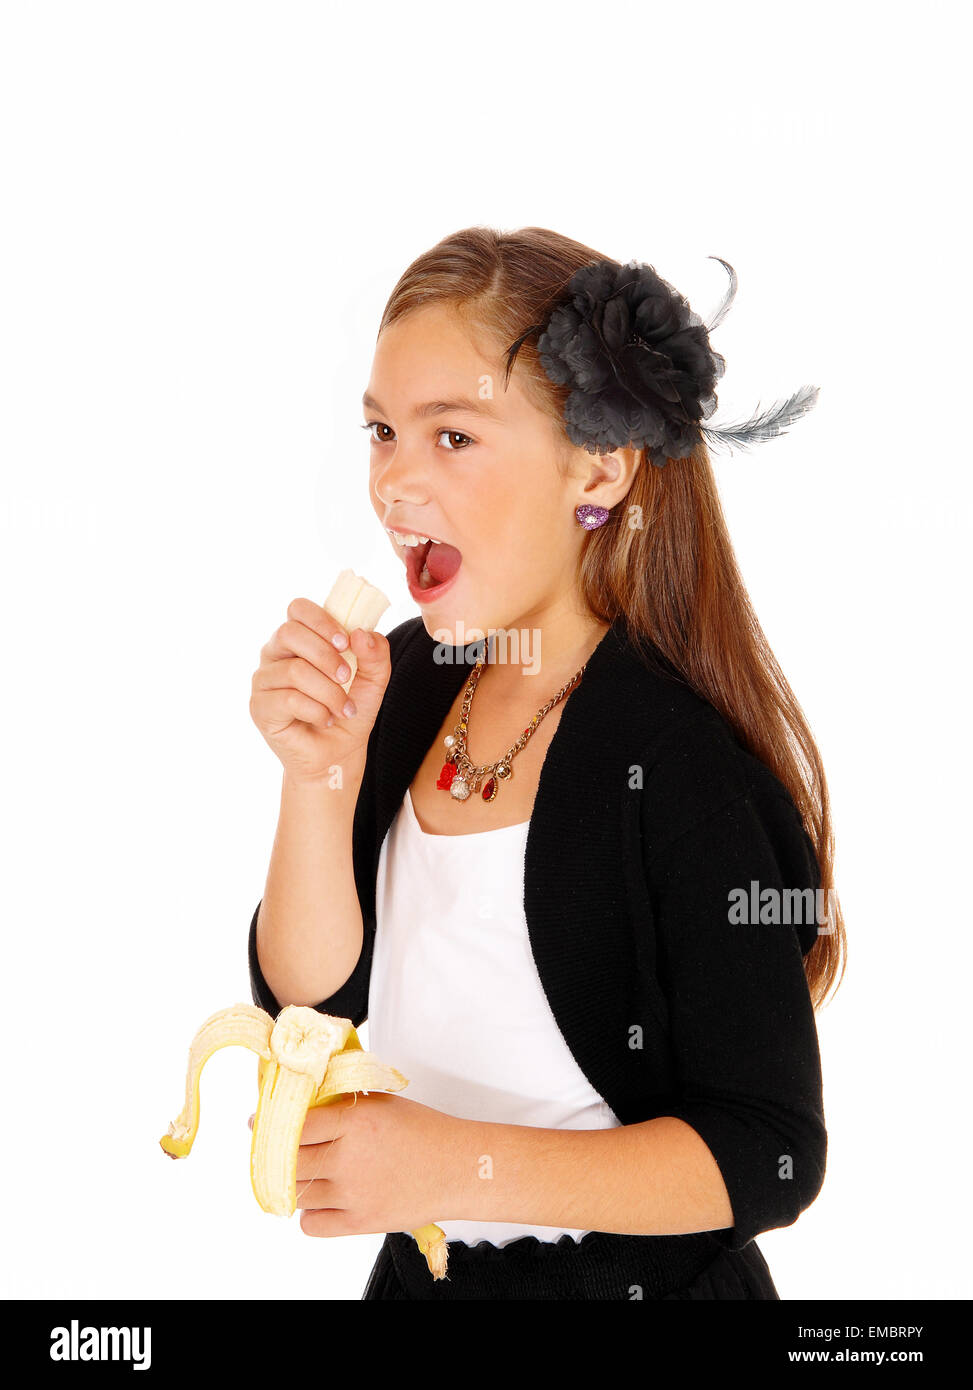 Ein acht Jahre altes Mädchen hielt eine Banane in der Hand zu essen, für weißen Hintergrund isoliert. Stockfoto